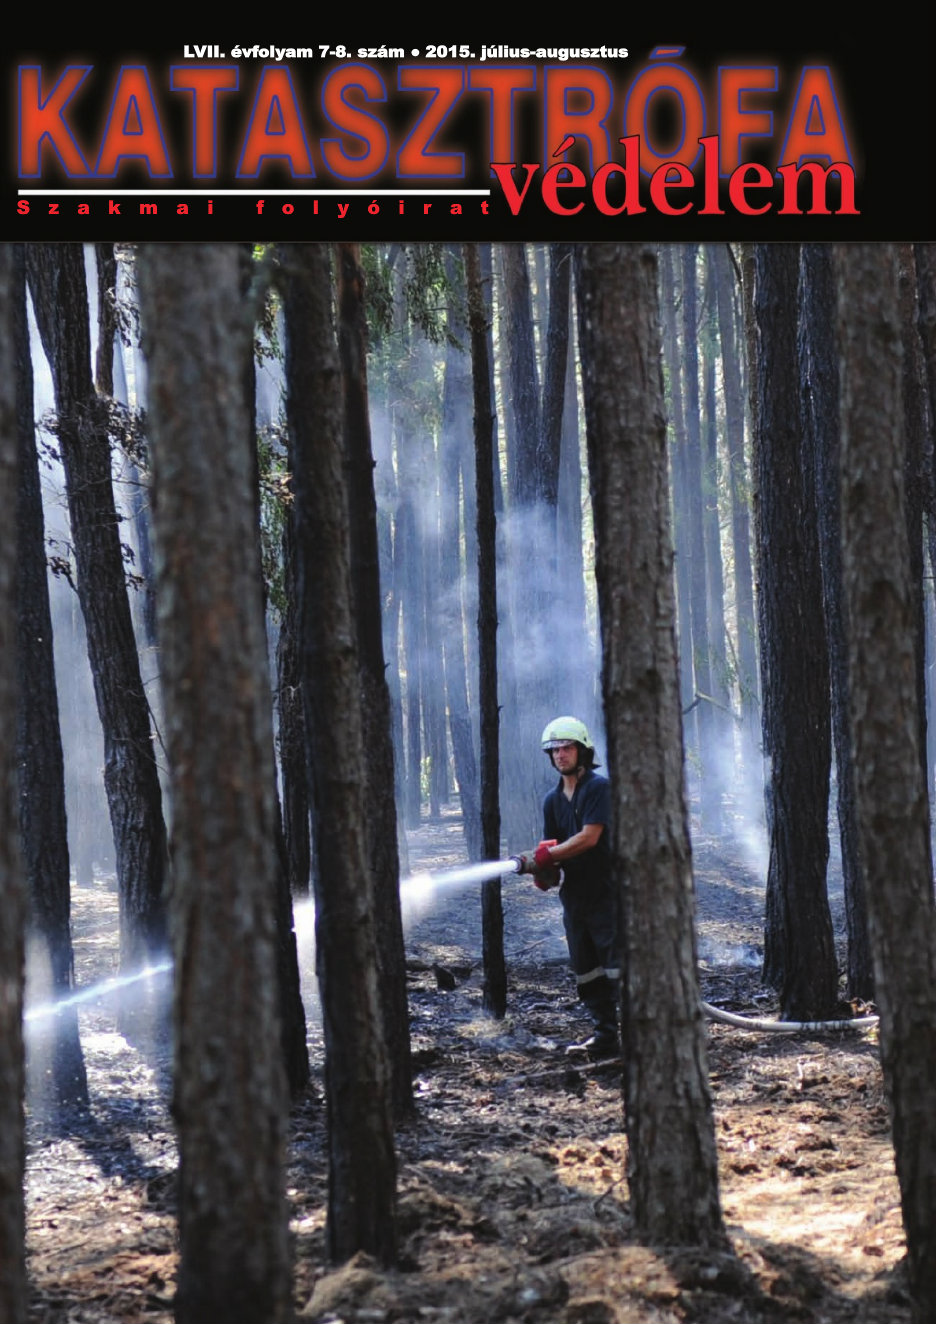 A Katasztrófavédelem magazin LVII. évfolyam 7-8. szám megtekintése